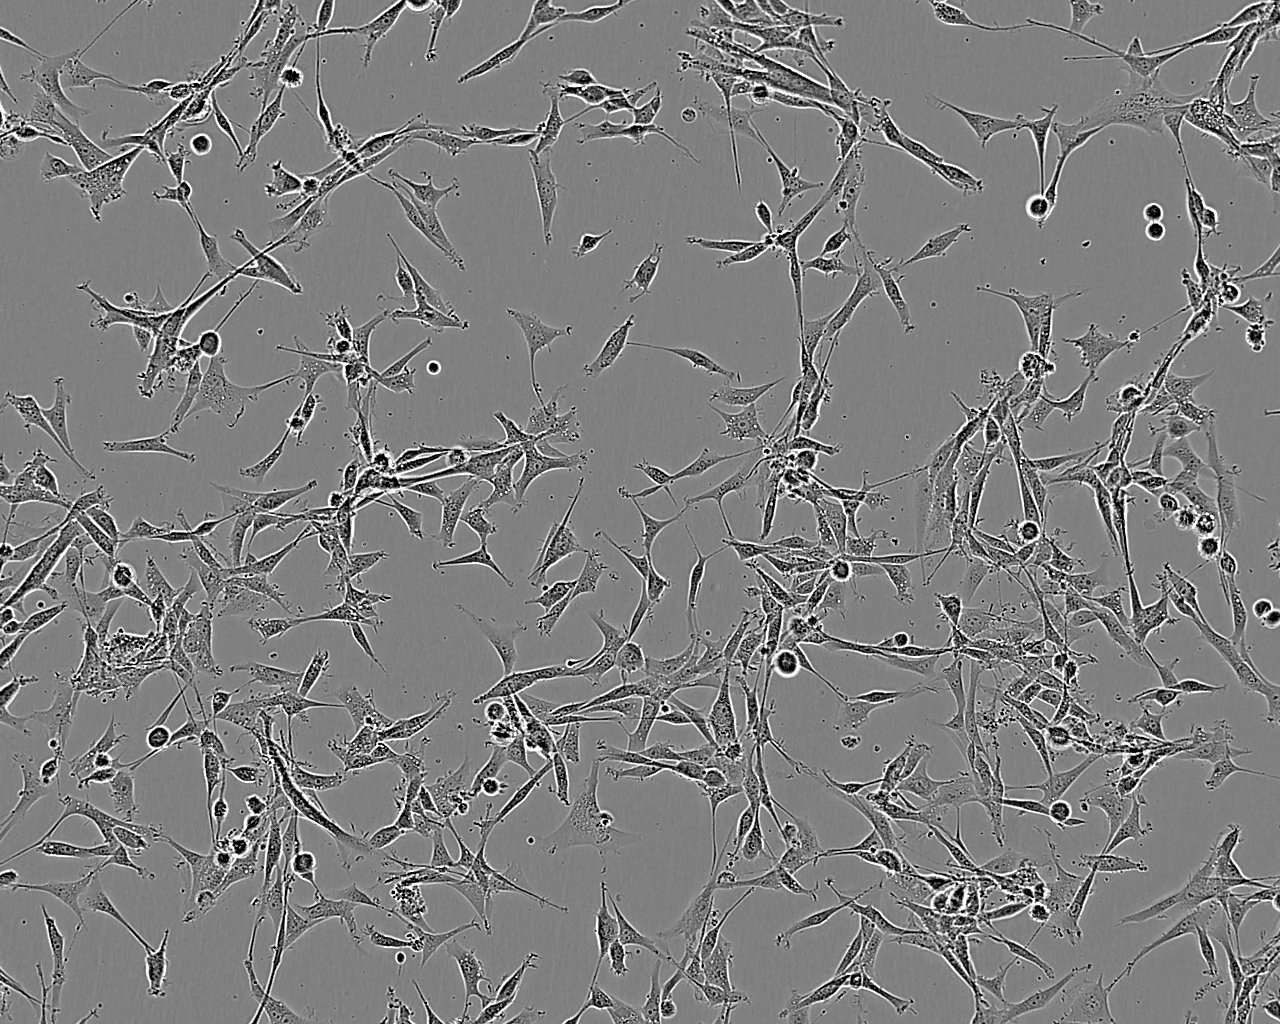 HET-1A细胞：人食管上皮细胞系,HET-1A